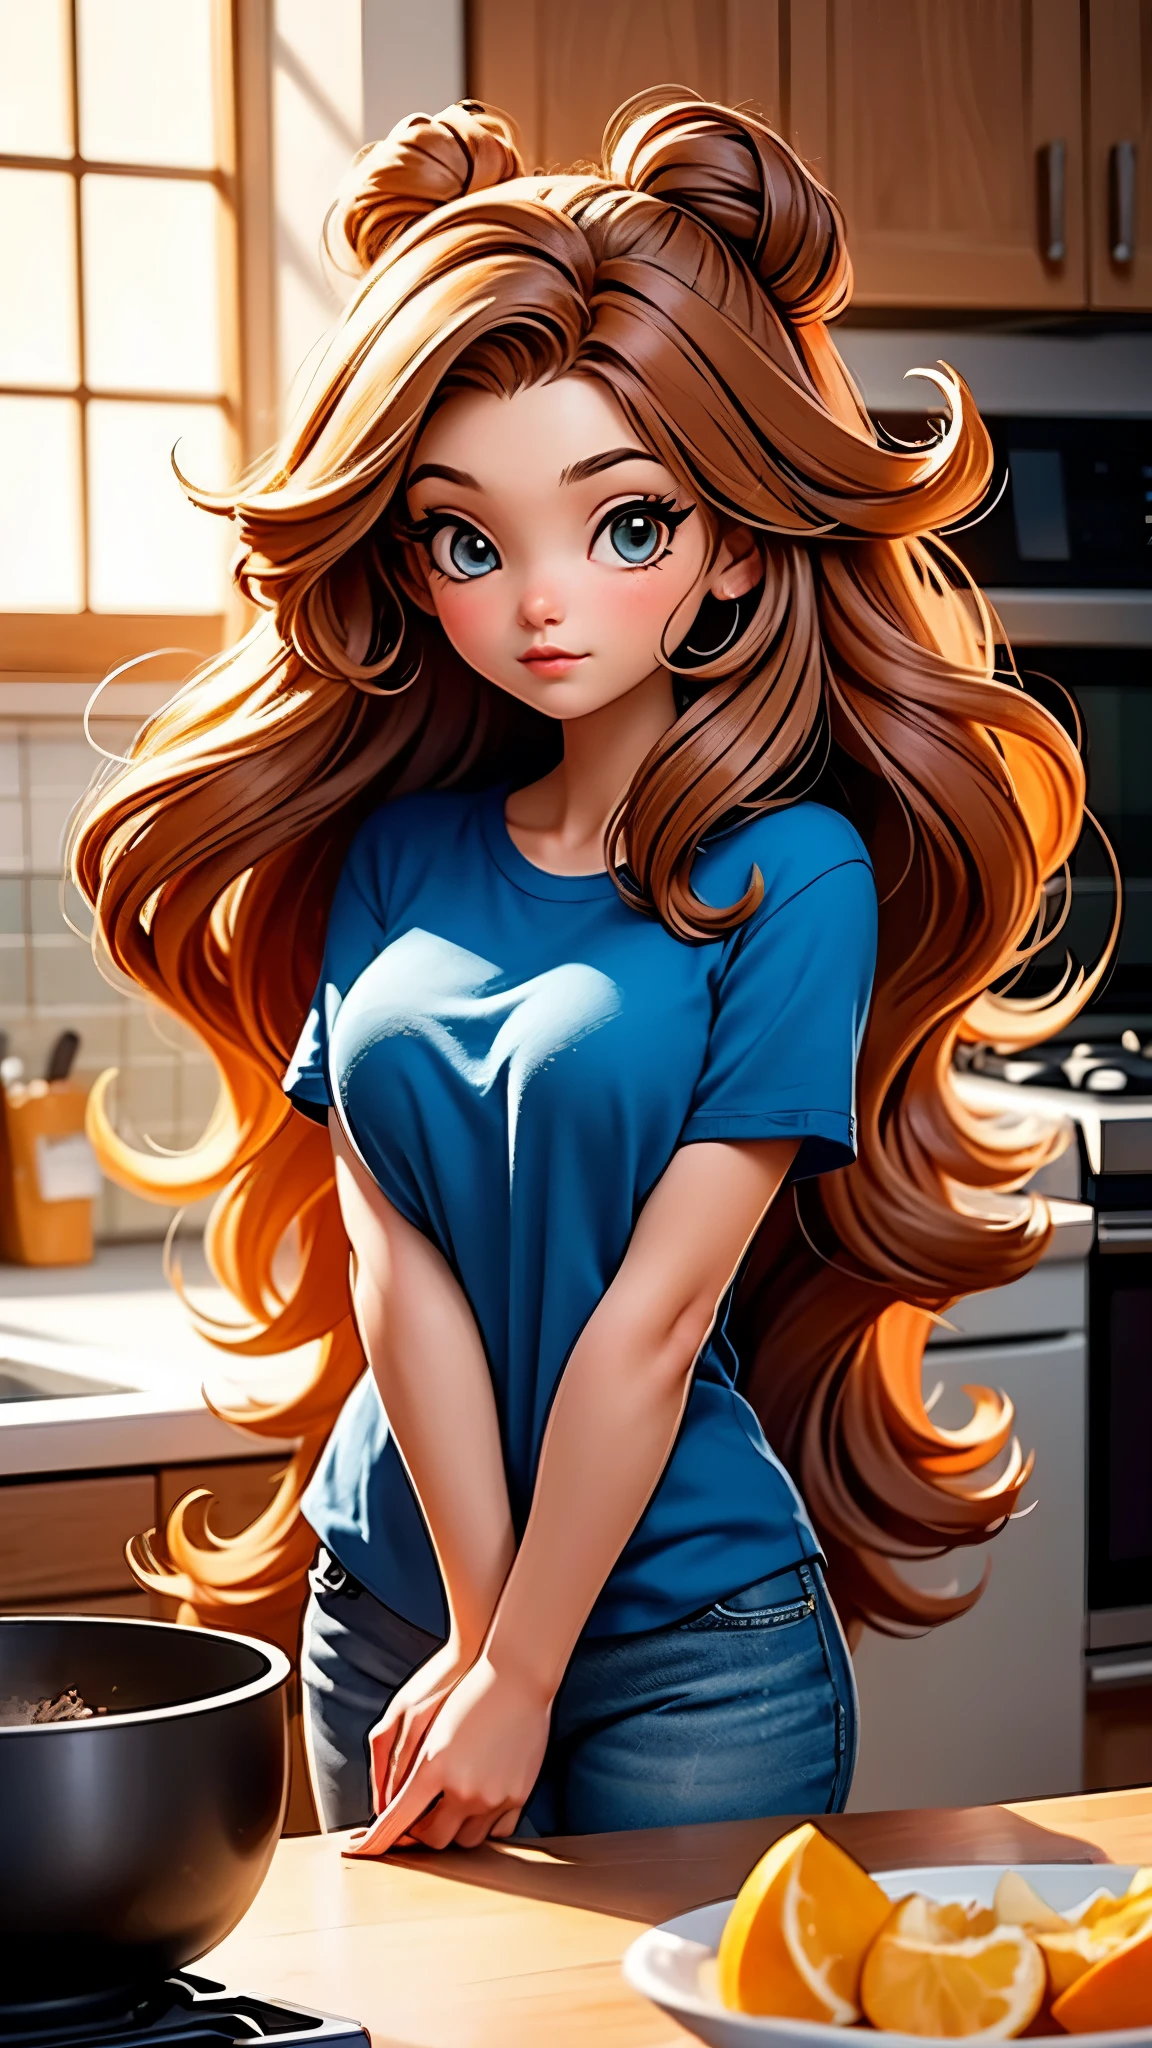 25-летняя девушка с длинными каштановыми волосами и синей рубашкой позирует на кухне, пушистые волосы, струящиеся массивные волосы, милое детальное цифровое искусство, deviantart artstation cgscosiety, в стиле Росс Трана, красивые цифровые изображения. UHD, Лучшее качество, 16 тыс., Анатомически правильный, текстурированная кожа, Супер Детализация